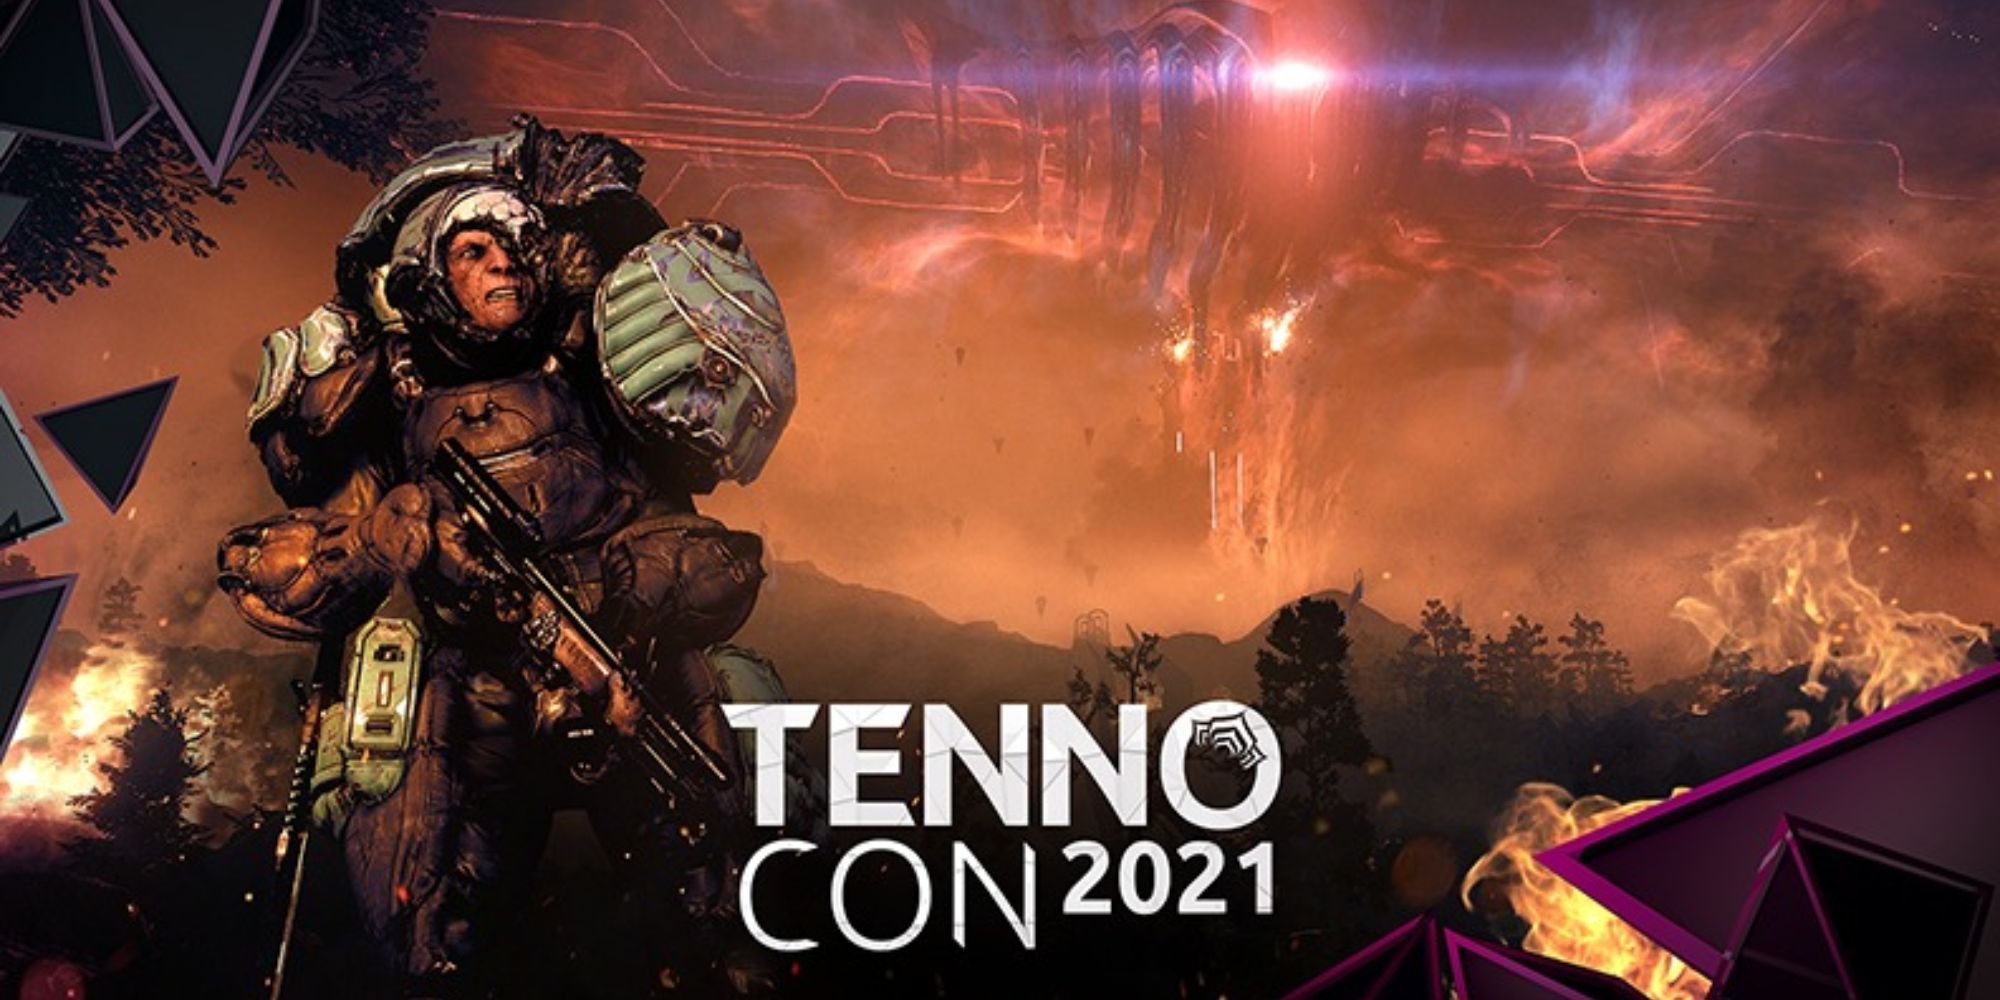 TennoCon 2021